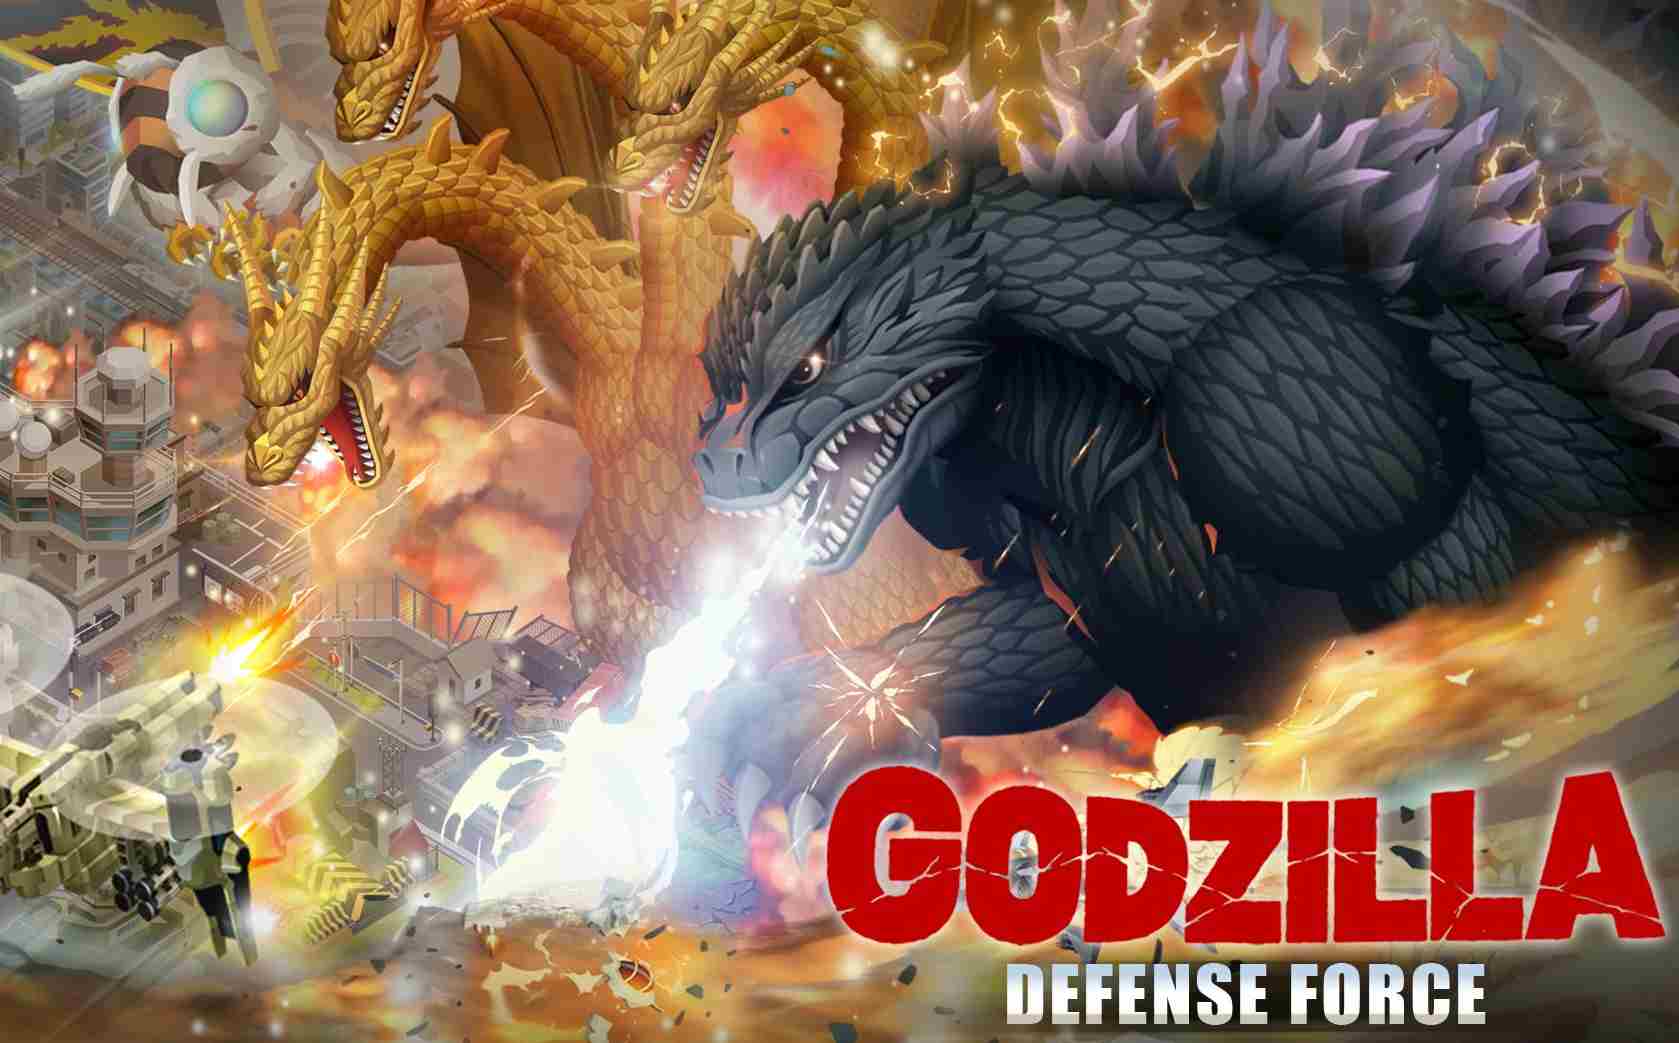 Godzilla Defense Force MOD (Menu Pro, Tiền Full, Full XNIUM và Full Đá Mặt Trăng) APK 2.3.18